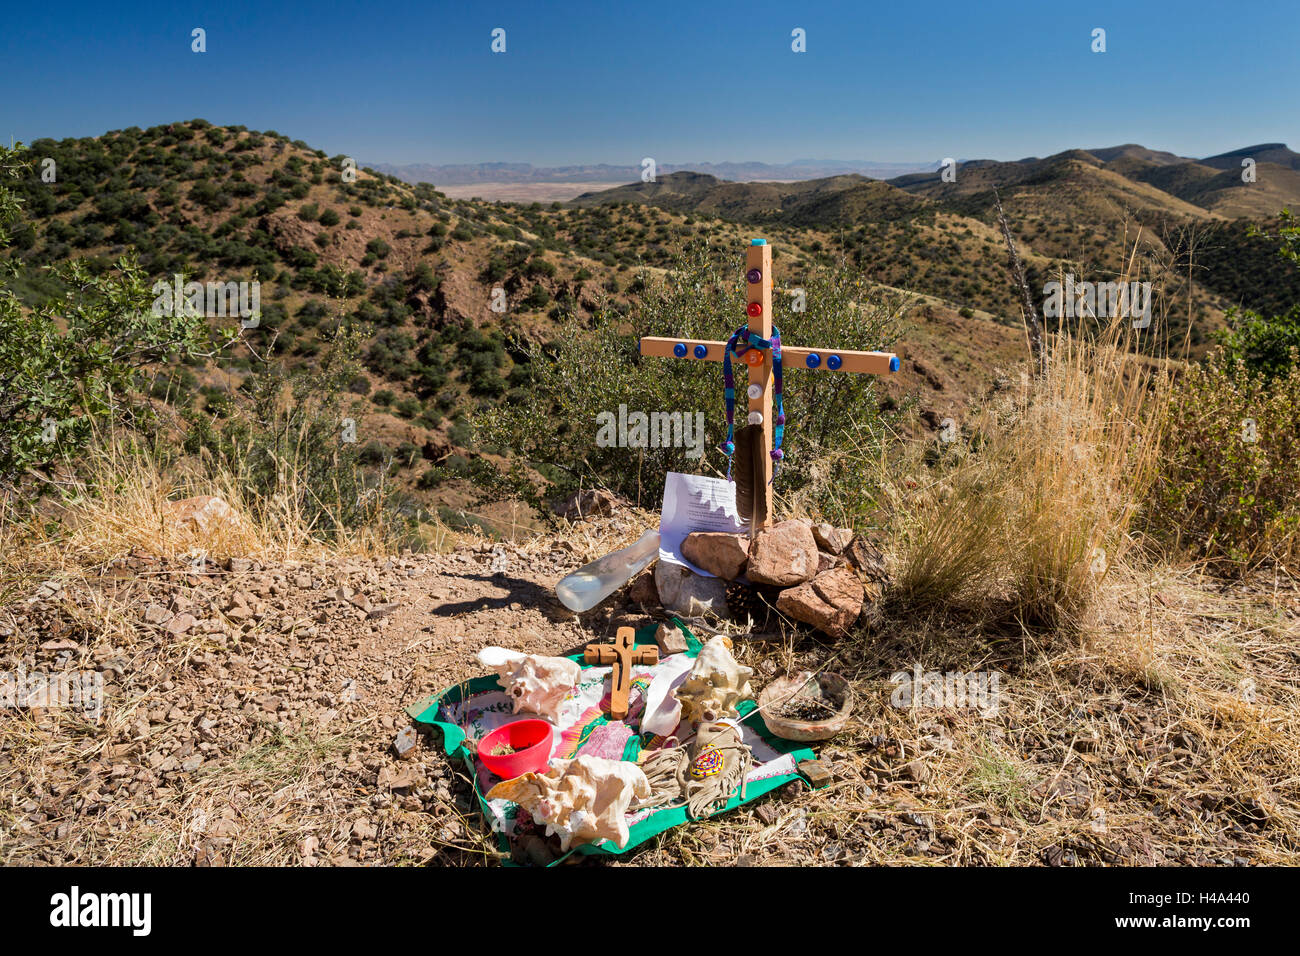 Bisbee, Arizona - Mitglieder der Armen Schulschwestern und ihrer Anhänger Pflanzen ein Kreuz in Mule Mountains in der Nähe der Stelle, wo die Reste von einem nicht identifizierten Migranten gefunden wurden. Hunderte von Migranten aus Mexiko und Mittelamerika haben in den letzten Jahren kamen ums Leben, als sie versuchten, US Border Patrol Prüfpunkte zu entziehen. Mehr als 400 Kreuze in der Wüste von Arizona, SSND und anderer Gruppen gepflanzt, jetzt markieren Sie die stellen, wo sie starb. Das Kreuz ist mit Kronkorken in der Wüste von Wasserflaschen, durchgeführt von Migrant/innen gefunden dekoriert. Bildnachweis: Jim West/Alamy Live-Nachrichten Stockfoto